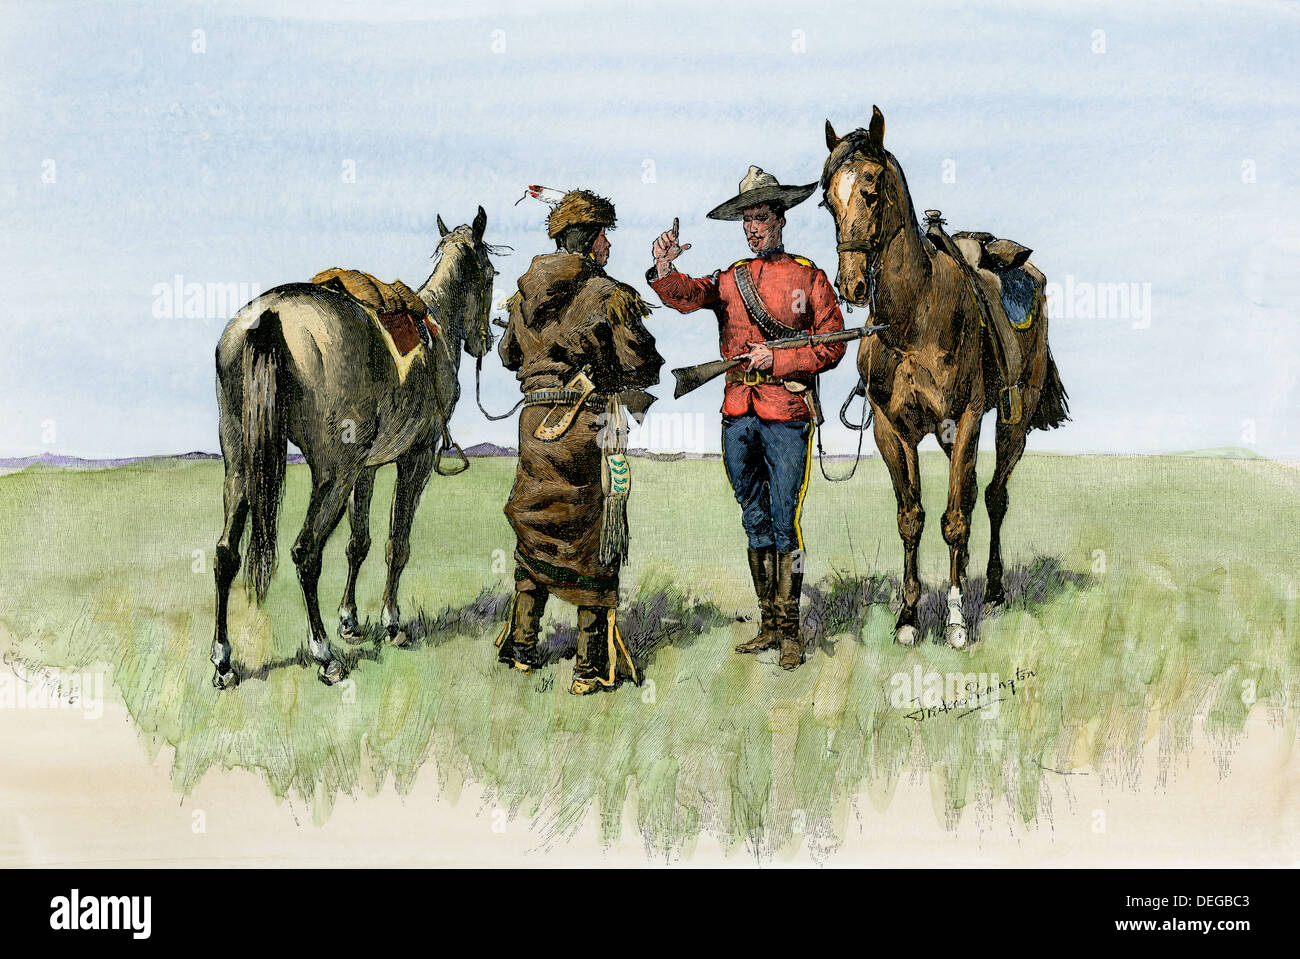 Mountie canadien voyageant un avertissement sur les plaines du nord, fin des années 1800. À la main, gravure sur bois, d'une illustration Frederic Remington Banque D'Images